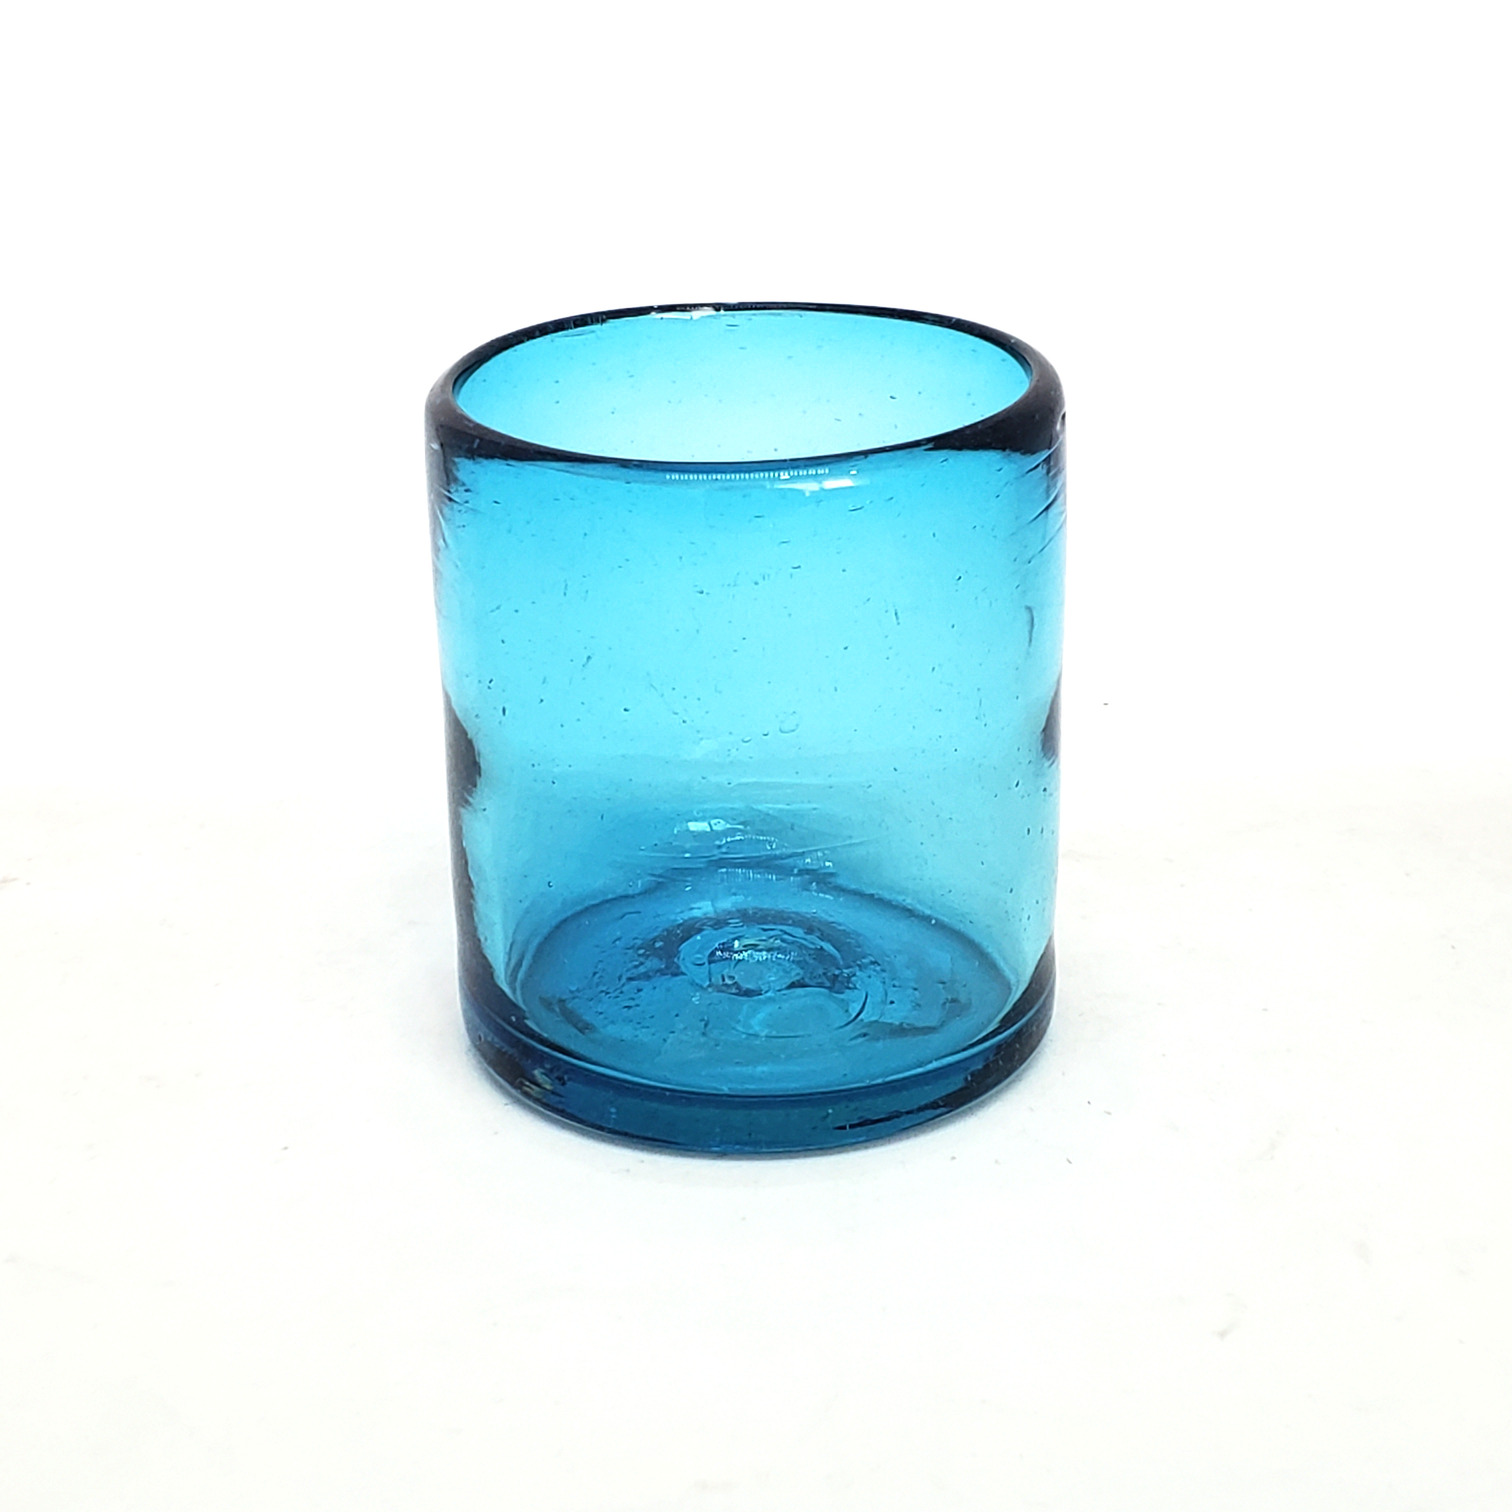 Colores Solidos al Mayoreo / s 9 oz color Azul Aguamarina Sólido (set de 6) / Éstos artesanales vasos le darán un toque colorido a su bebida favorita.